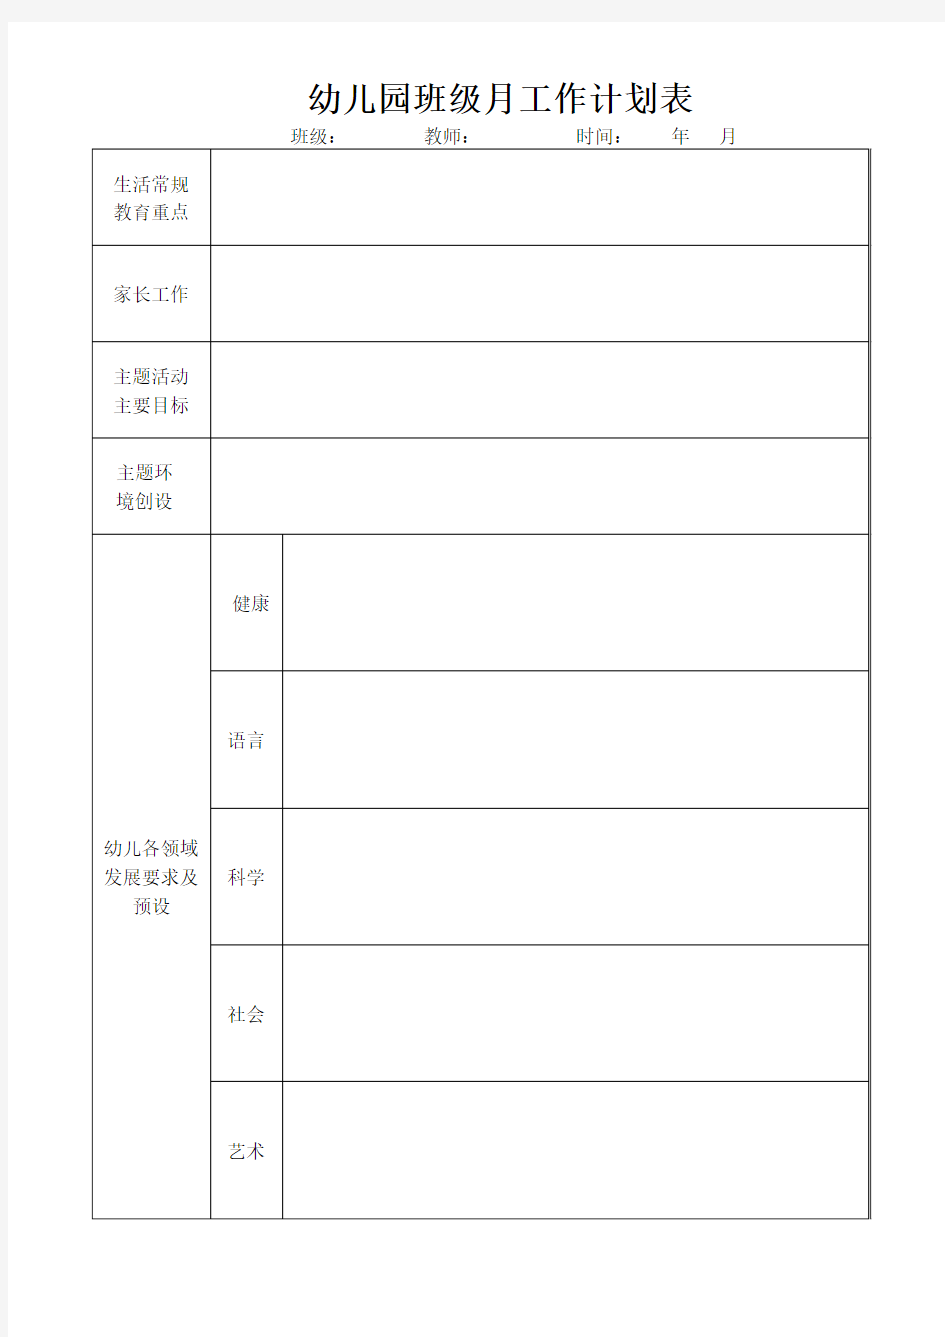 幼儿园班级月工作计划表